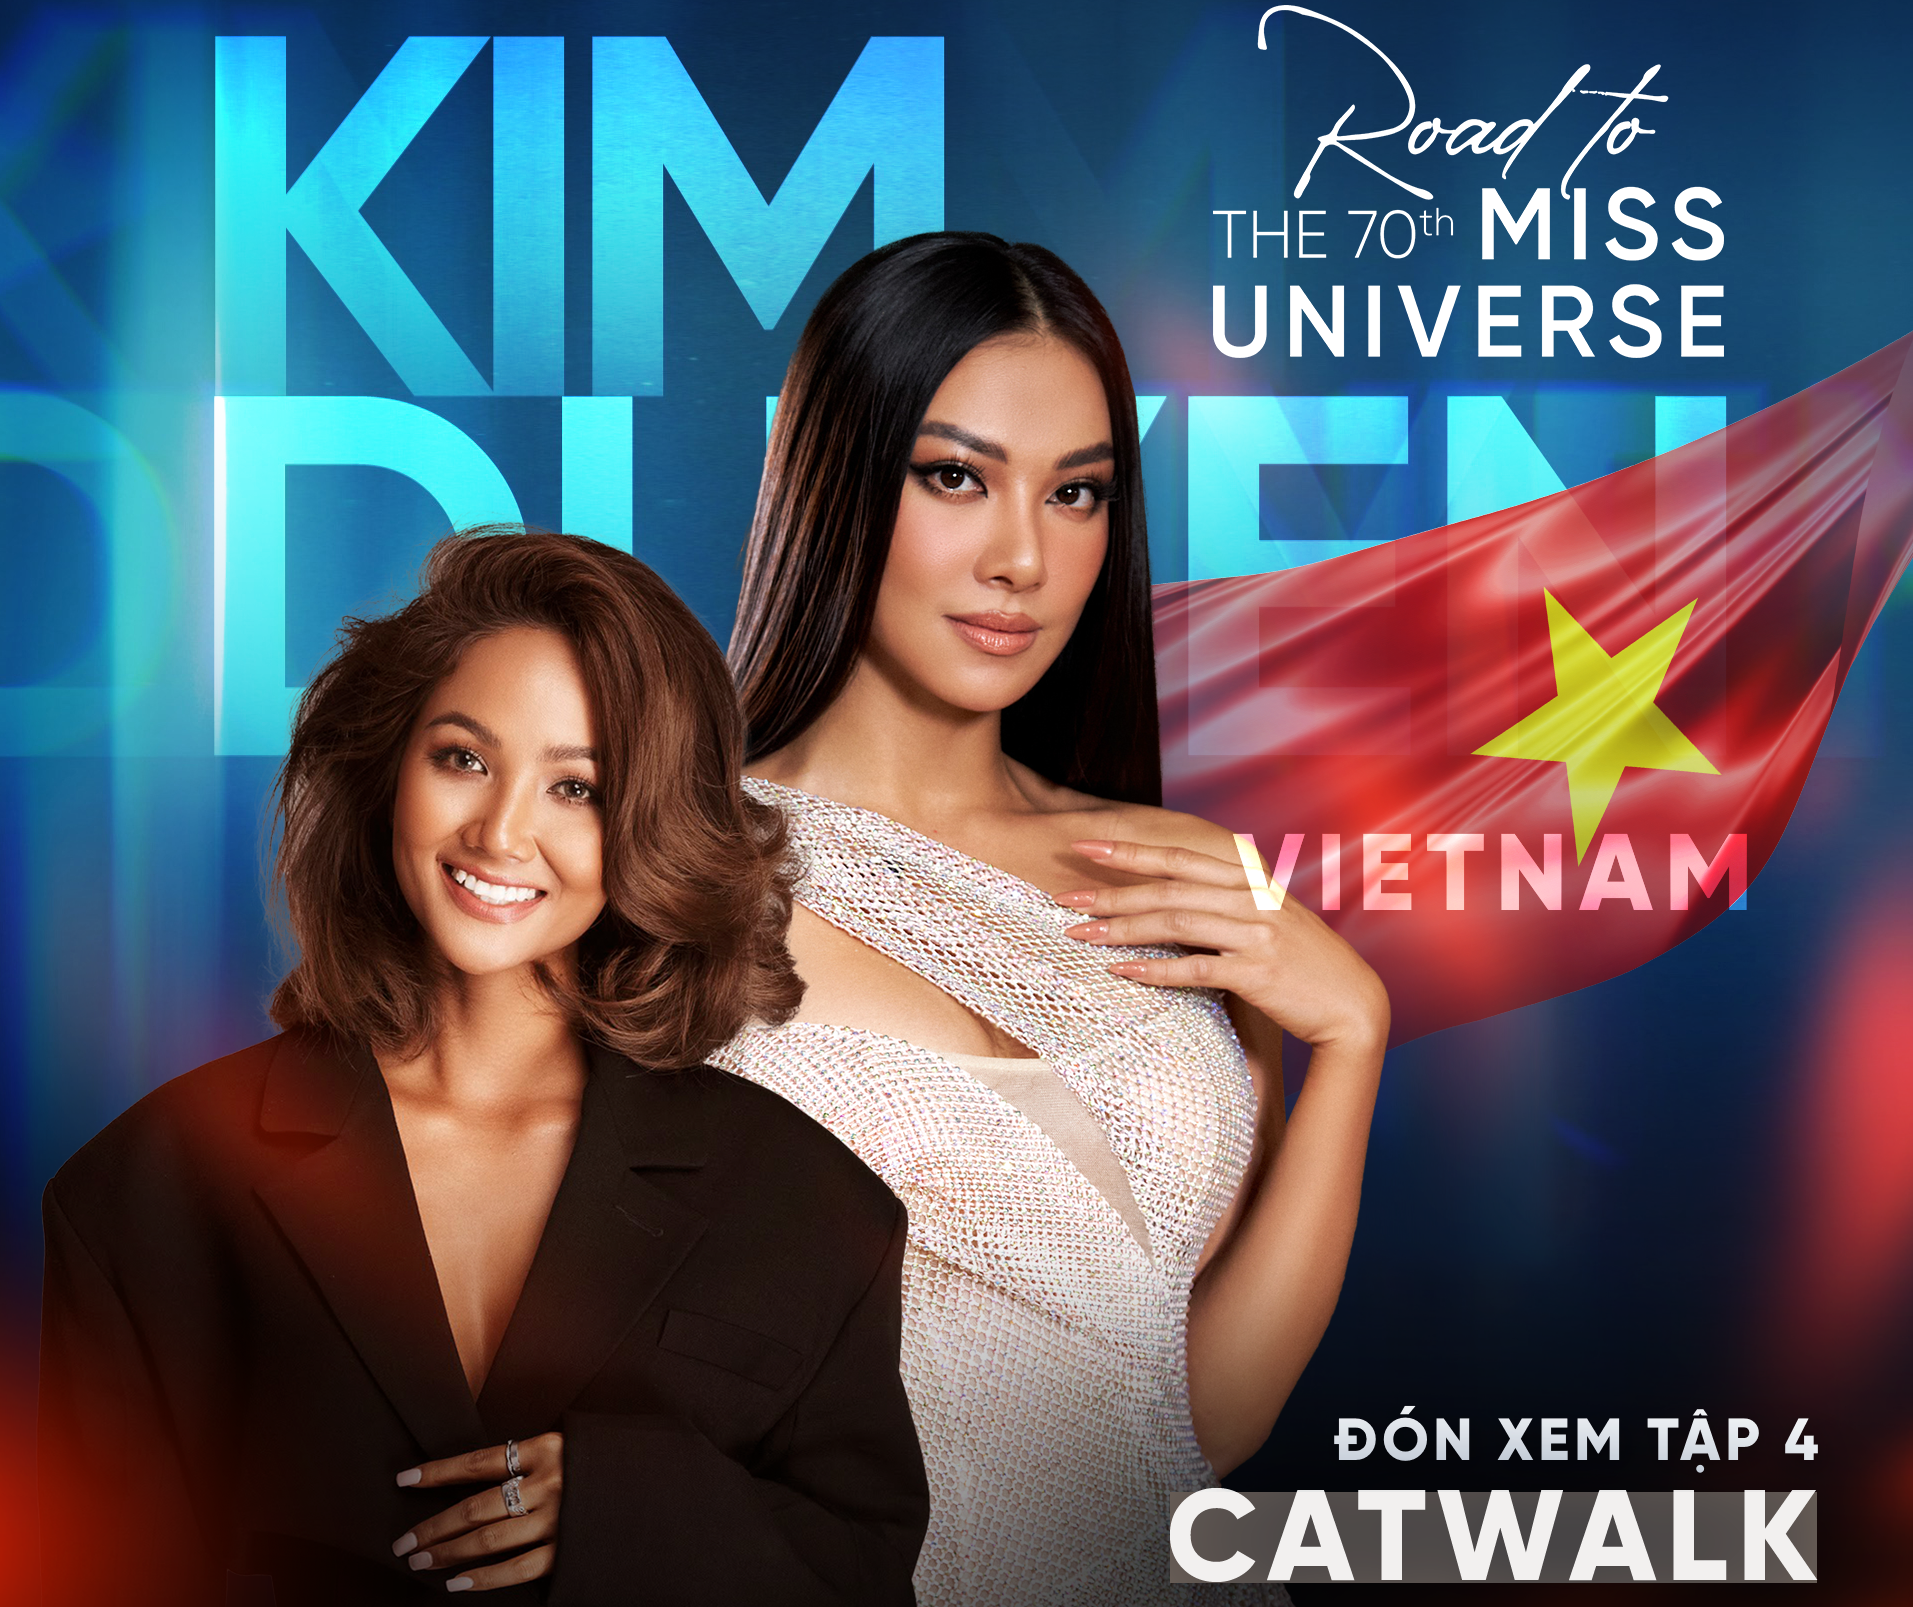 Miss Universe cận kề, H'Hen Niê nhận xét cách catwalk của Kim Duyên: 'Hoàn toàn không ổn' - Ảnh 1